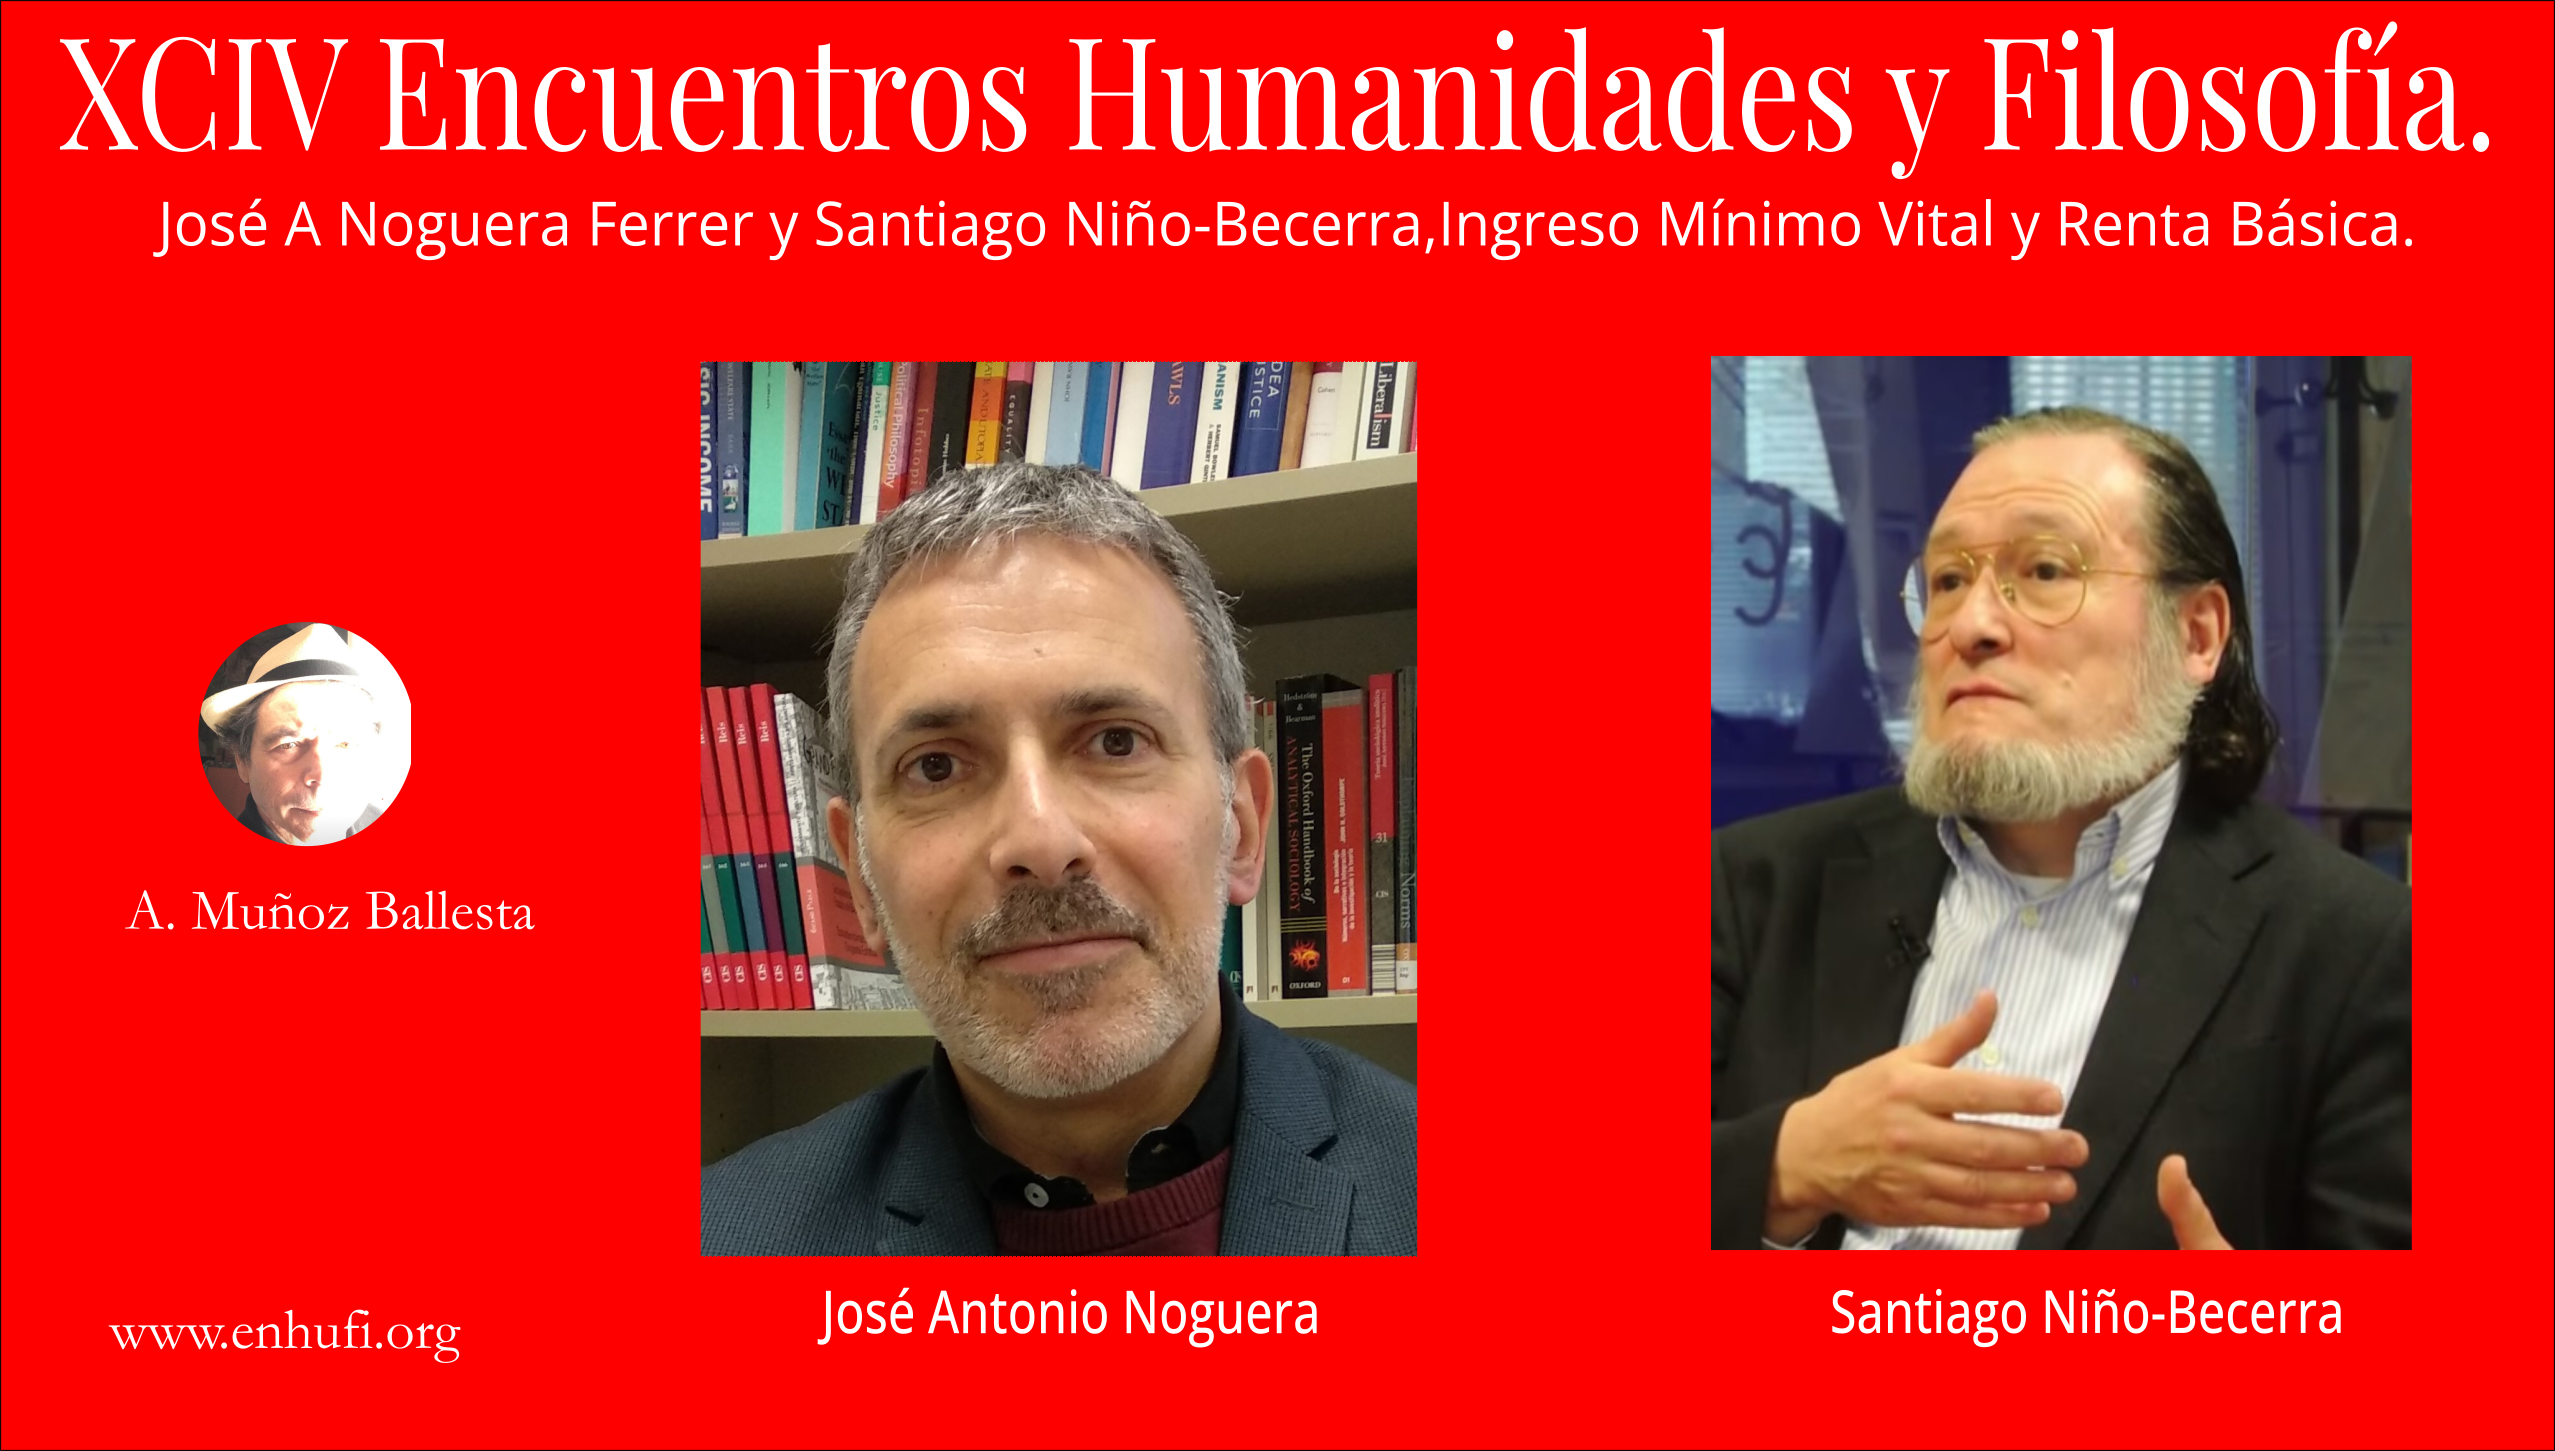  XCIV Encuentro Humanidades y Filosofía, José A Noguera Ferrer y Santiago Niño-Becerra, Ingreso Mínimo Vital y Renta Básica.